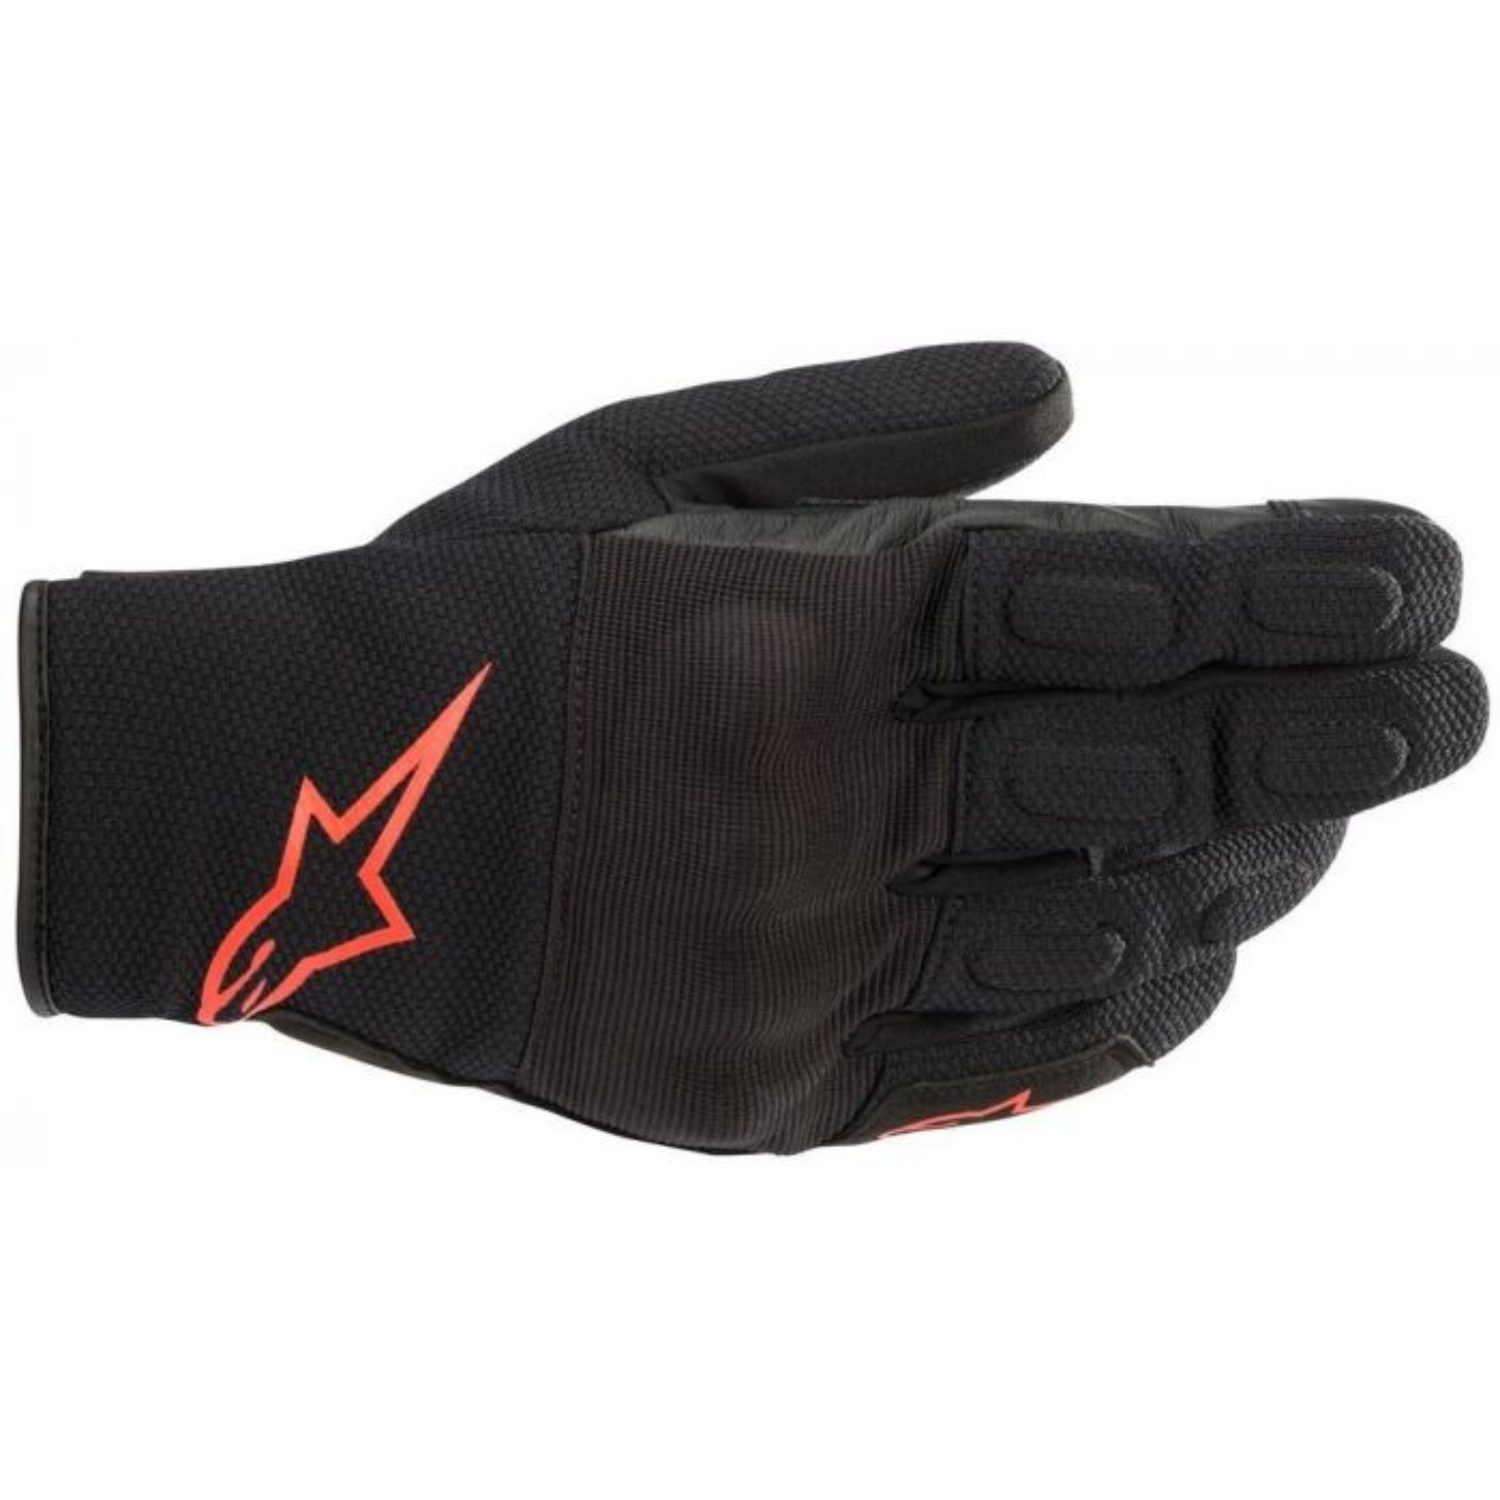 Image of Alpinestars S Max Drystar Gloves Black Red Fluo Talla S